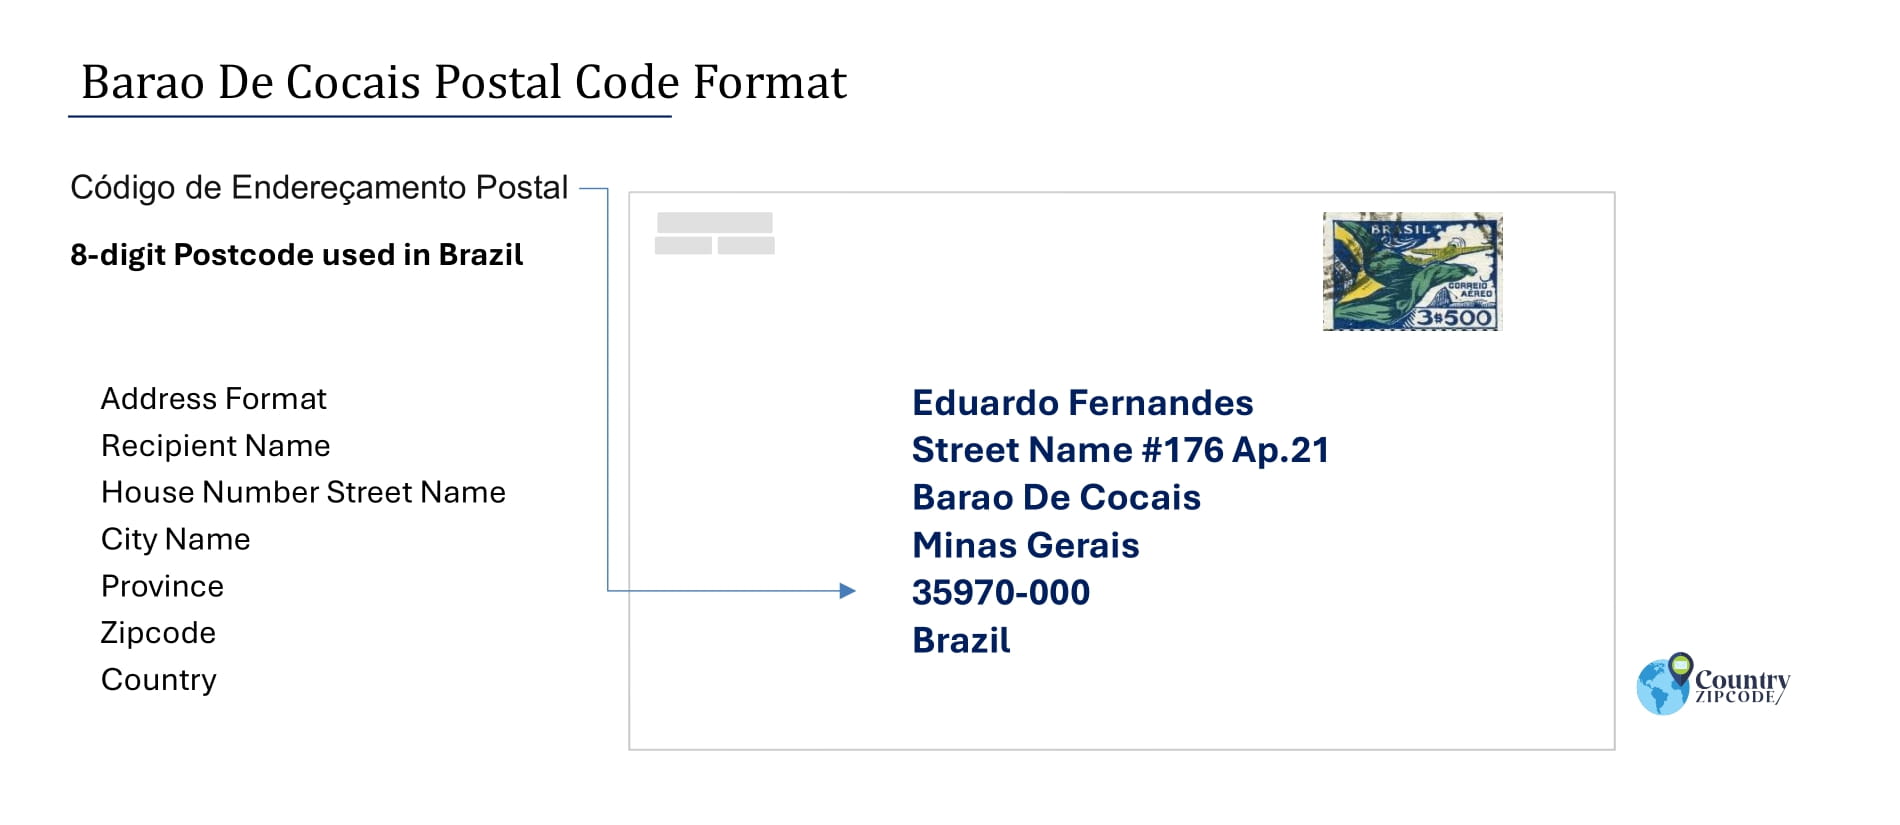 Example of Codigo de Enderecamento Postal and Address format of Barao De Cocais Brazil